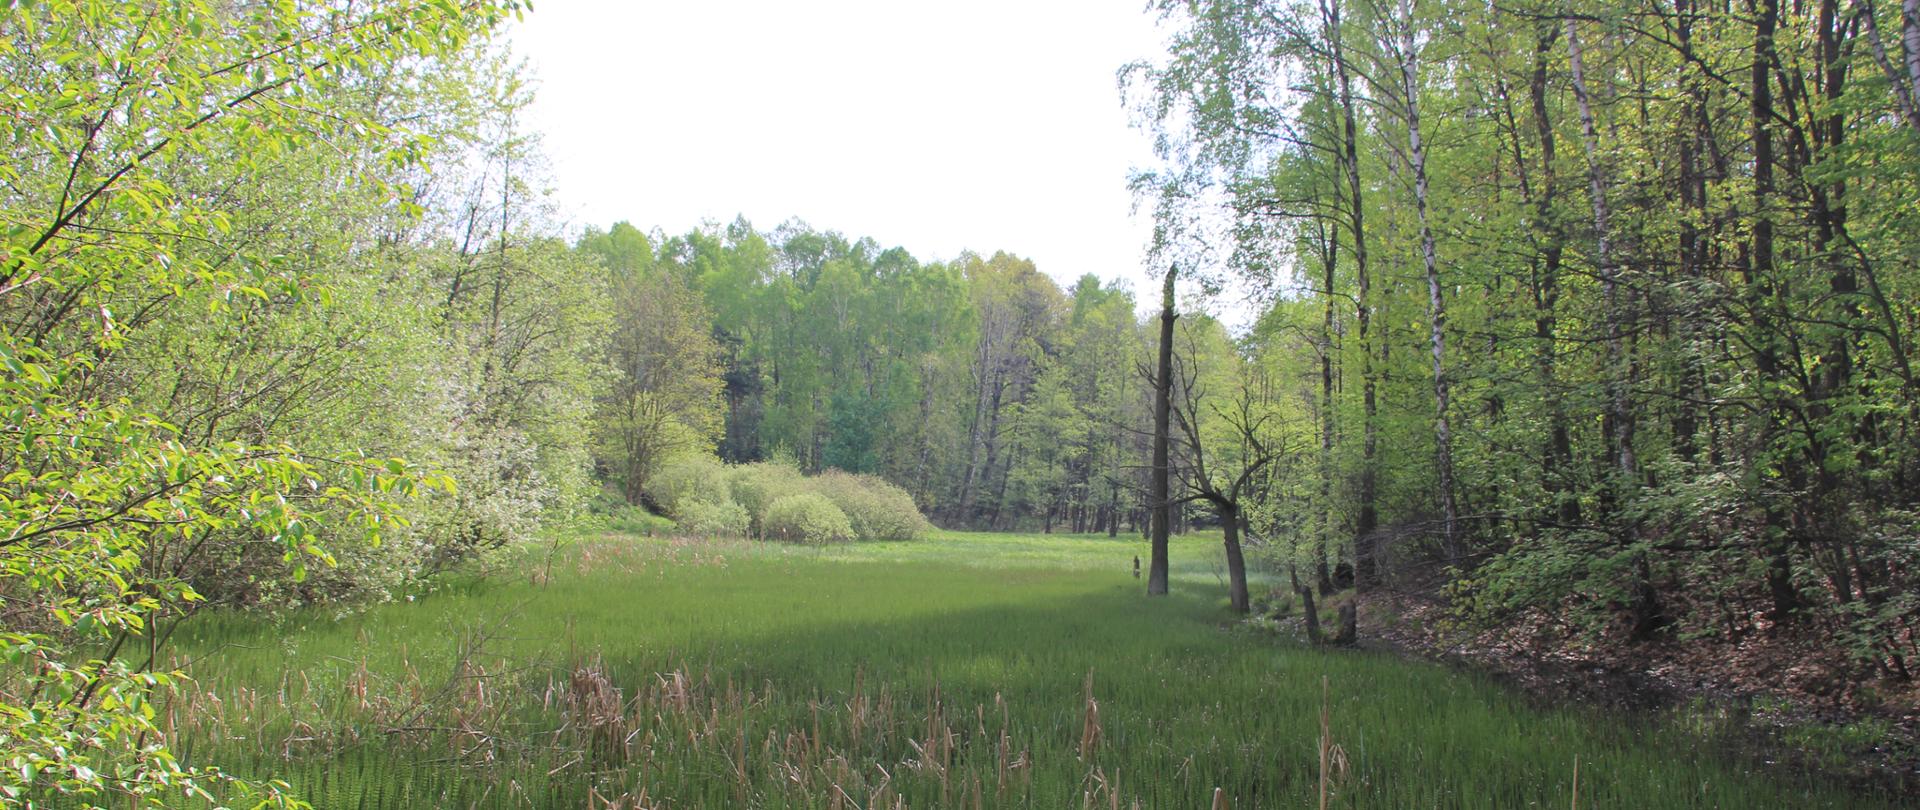 Zdjęcie przedstawia fragment rezerwatu: śródleśną podmokłą łąkę, wokół niej kępy drzew